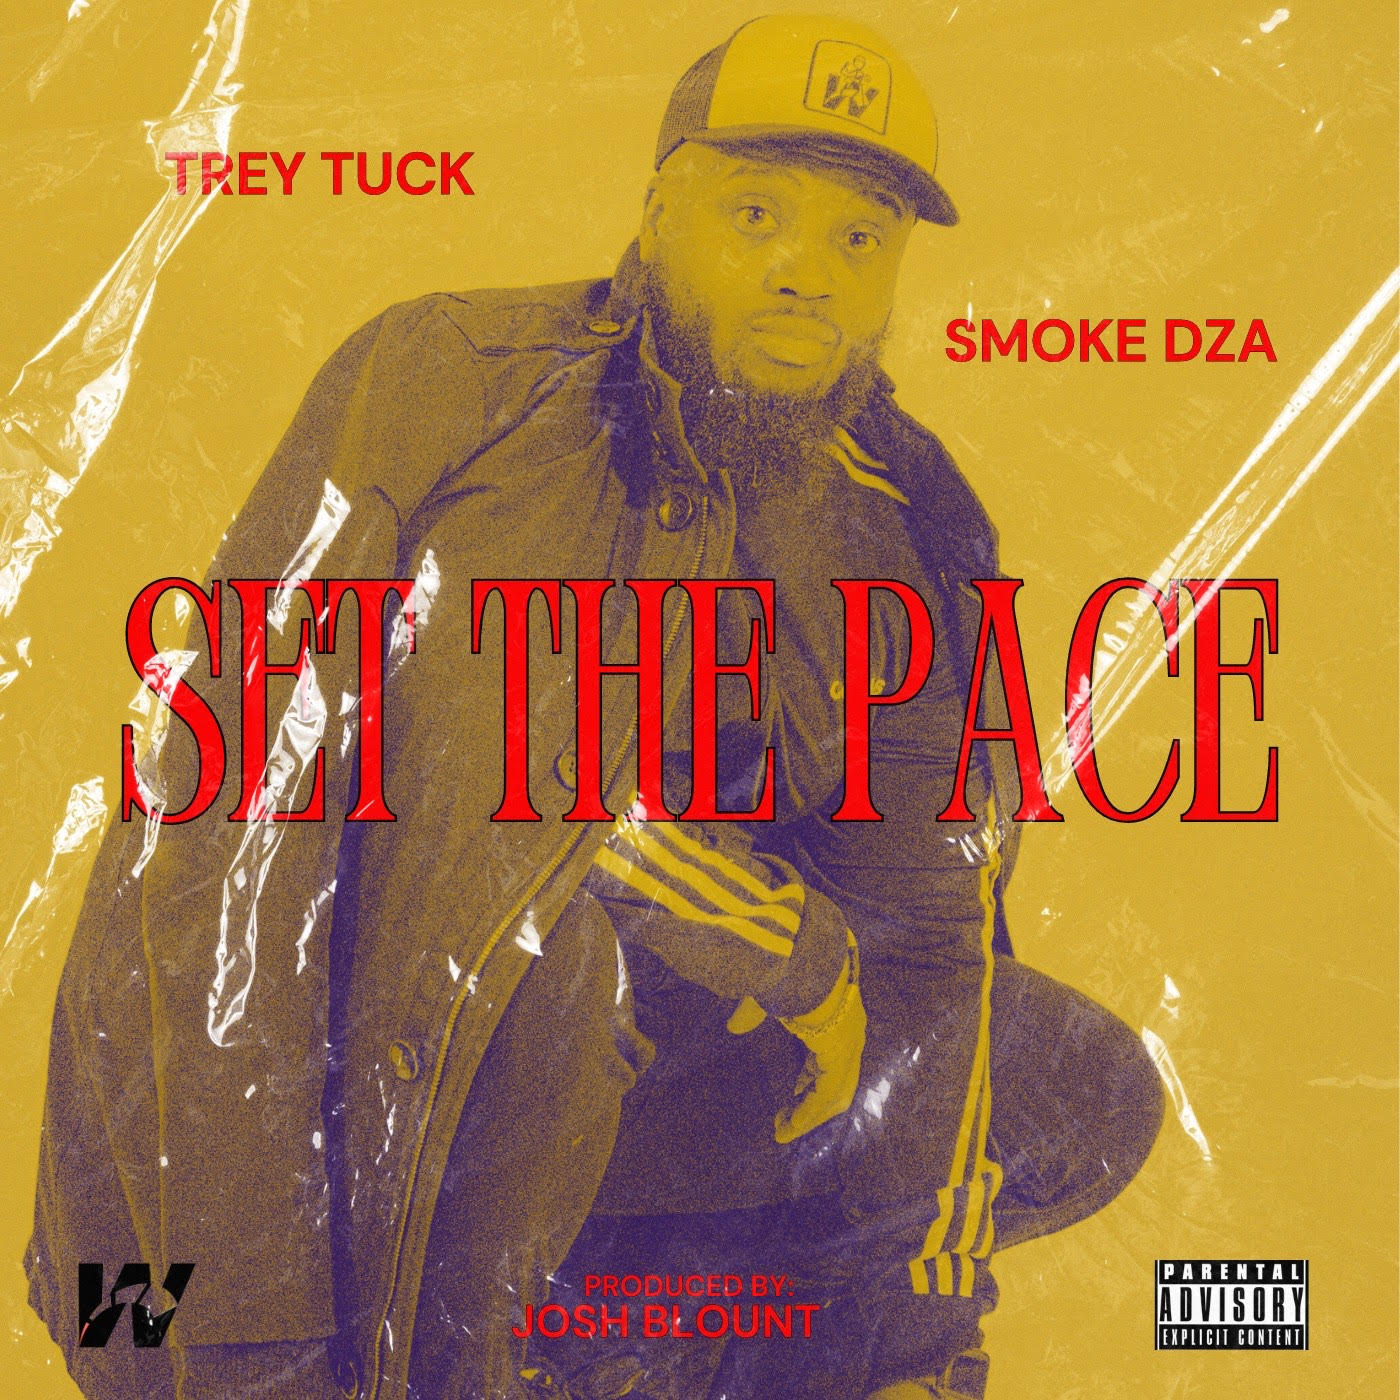 Trey Tuck – “SET THE PACE” (ft. Smoke DZA)